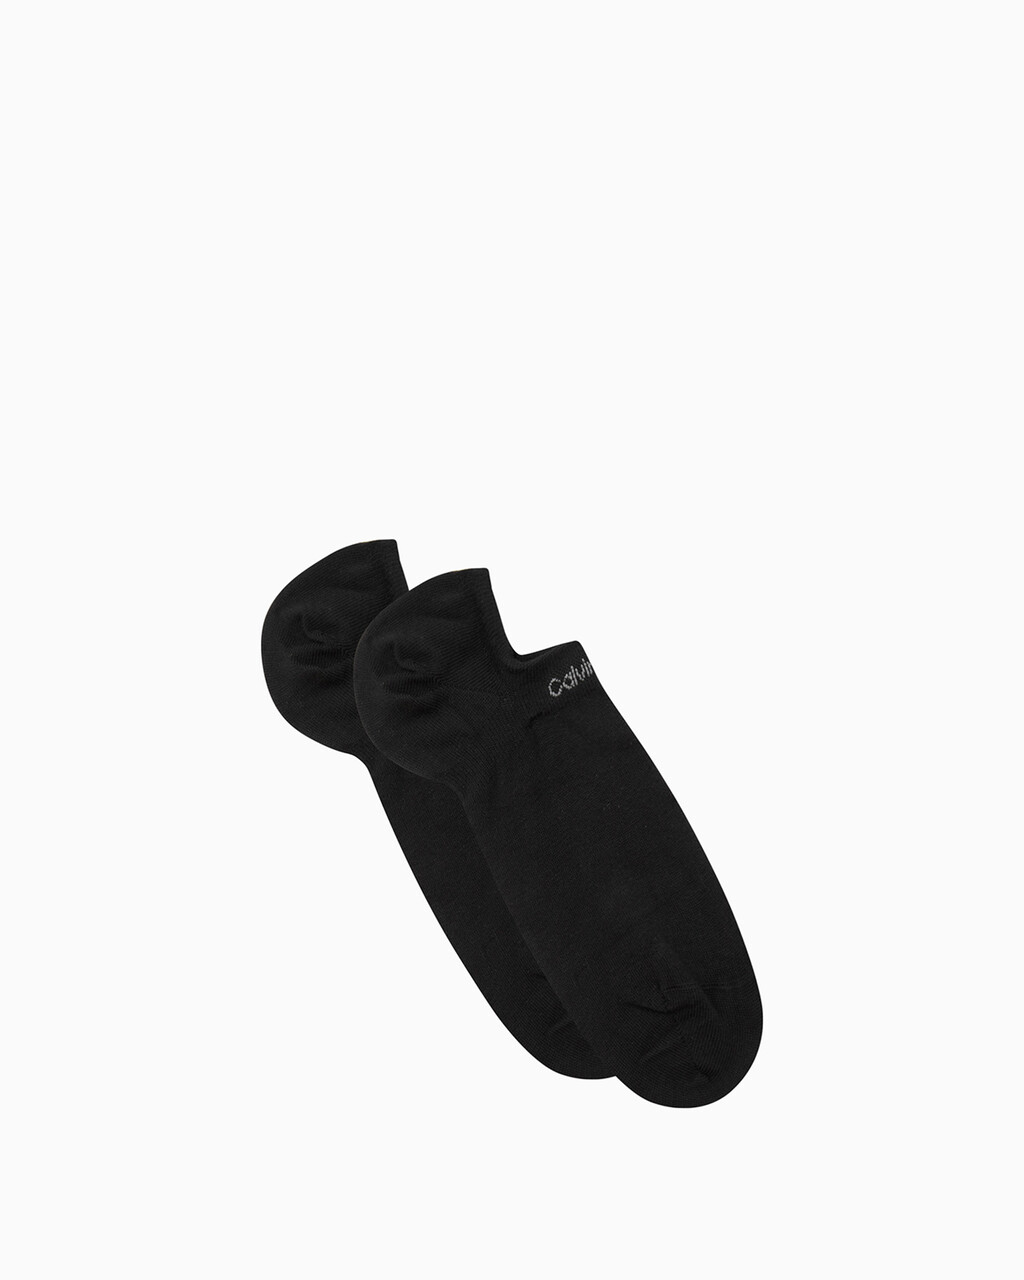 棉質腳跟防滑低筒襪 2 雙裝, COLOR 001, hi-res